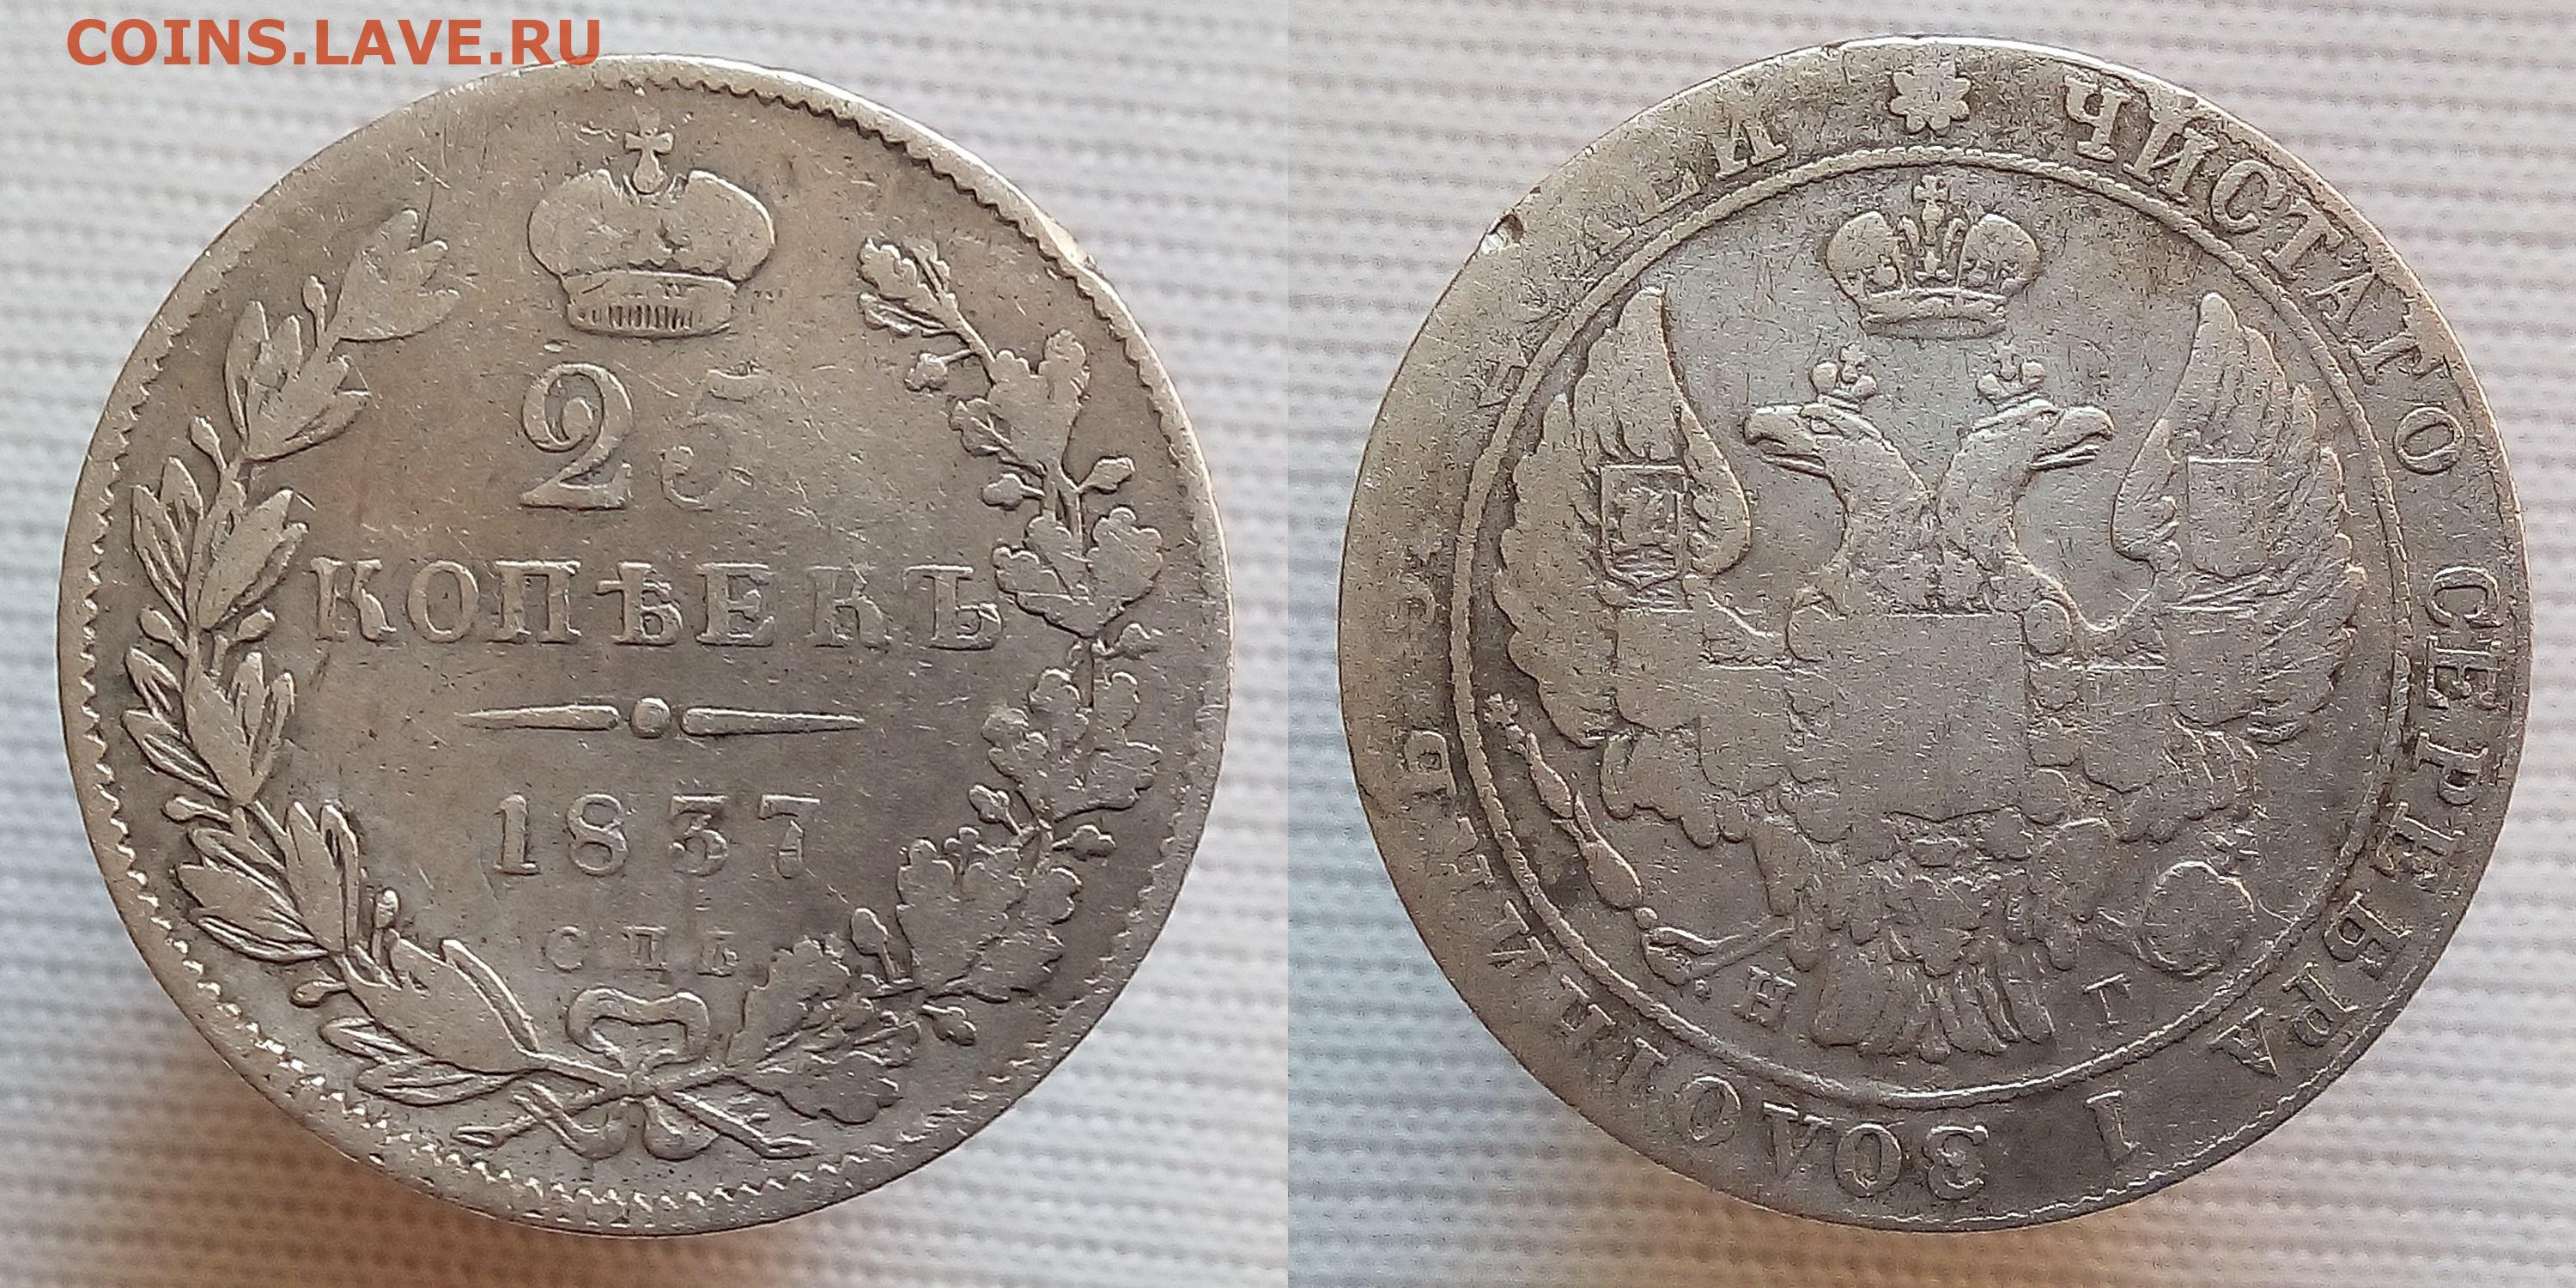 60 рублей 25 копеек. 5 Копеек 1837. Монета 15 копеек 1837 года серебро. 25 Копеек 1837 года. Советские 25 копеек.